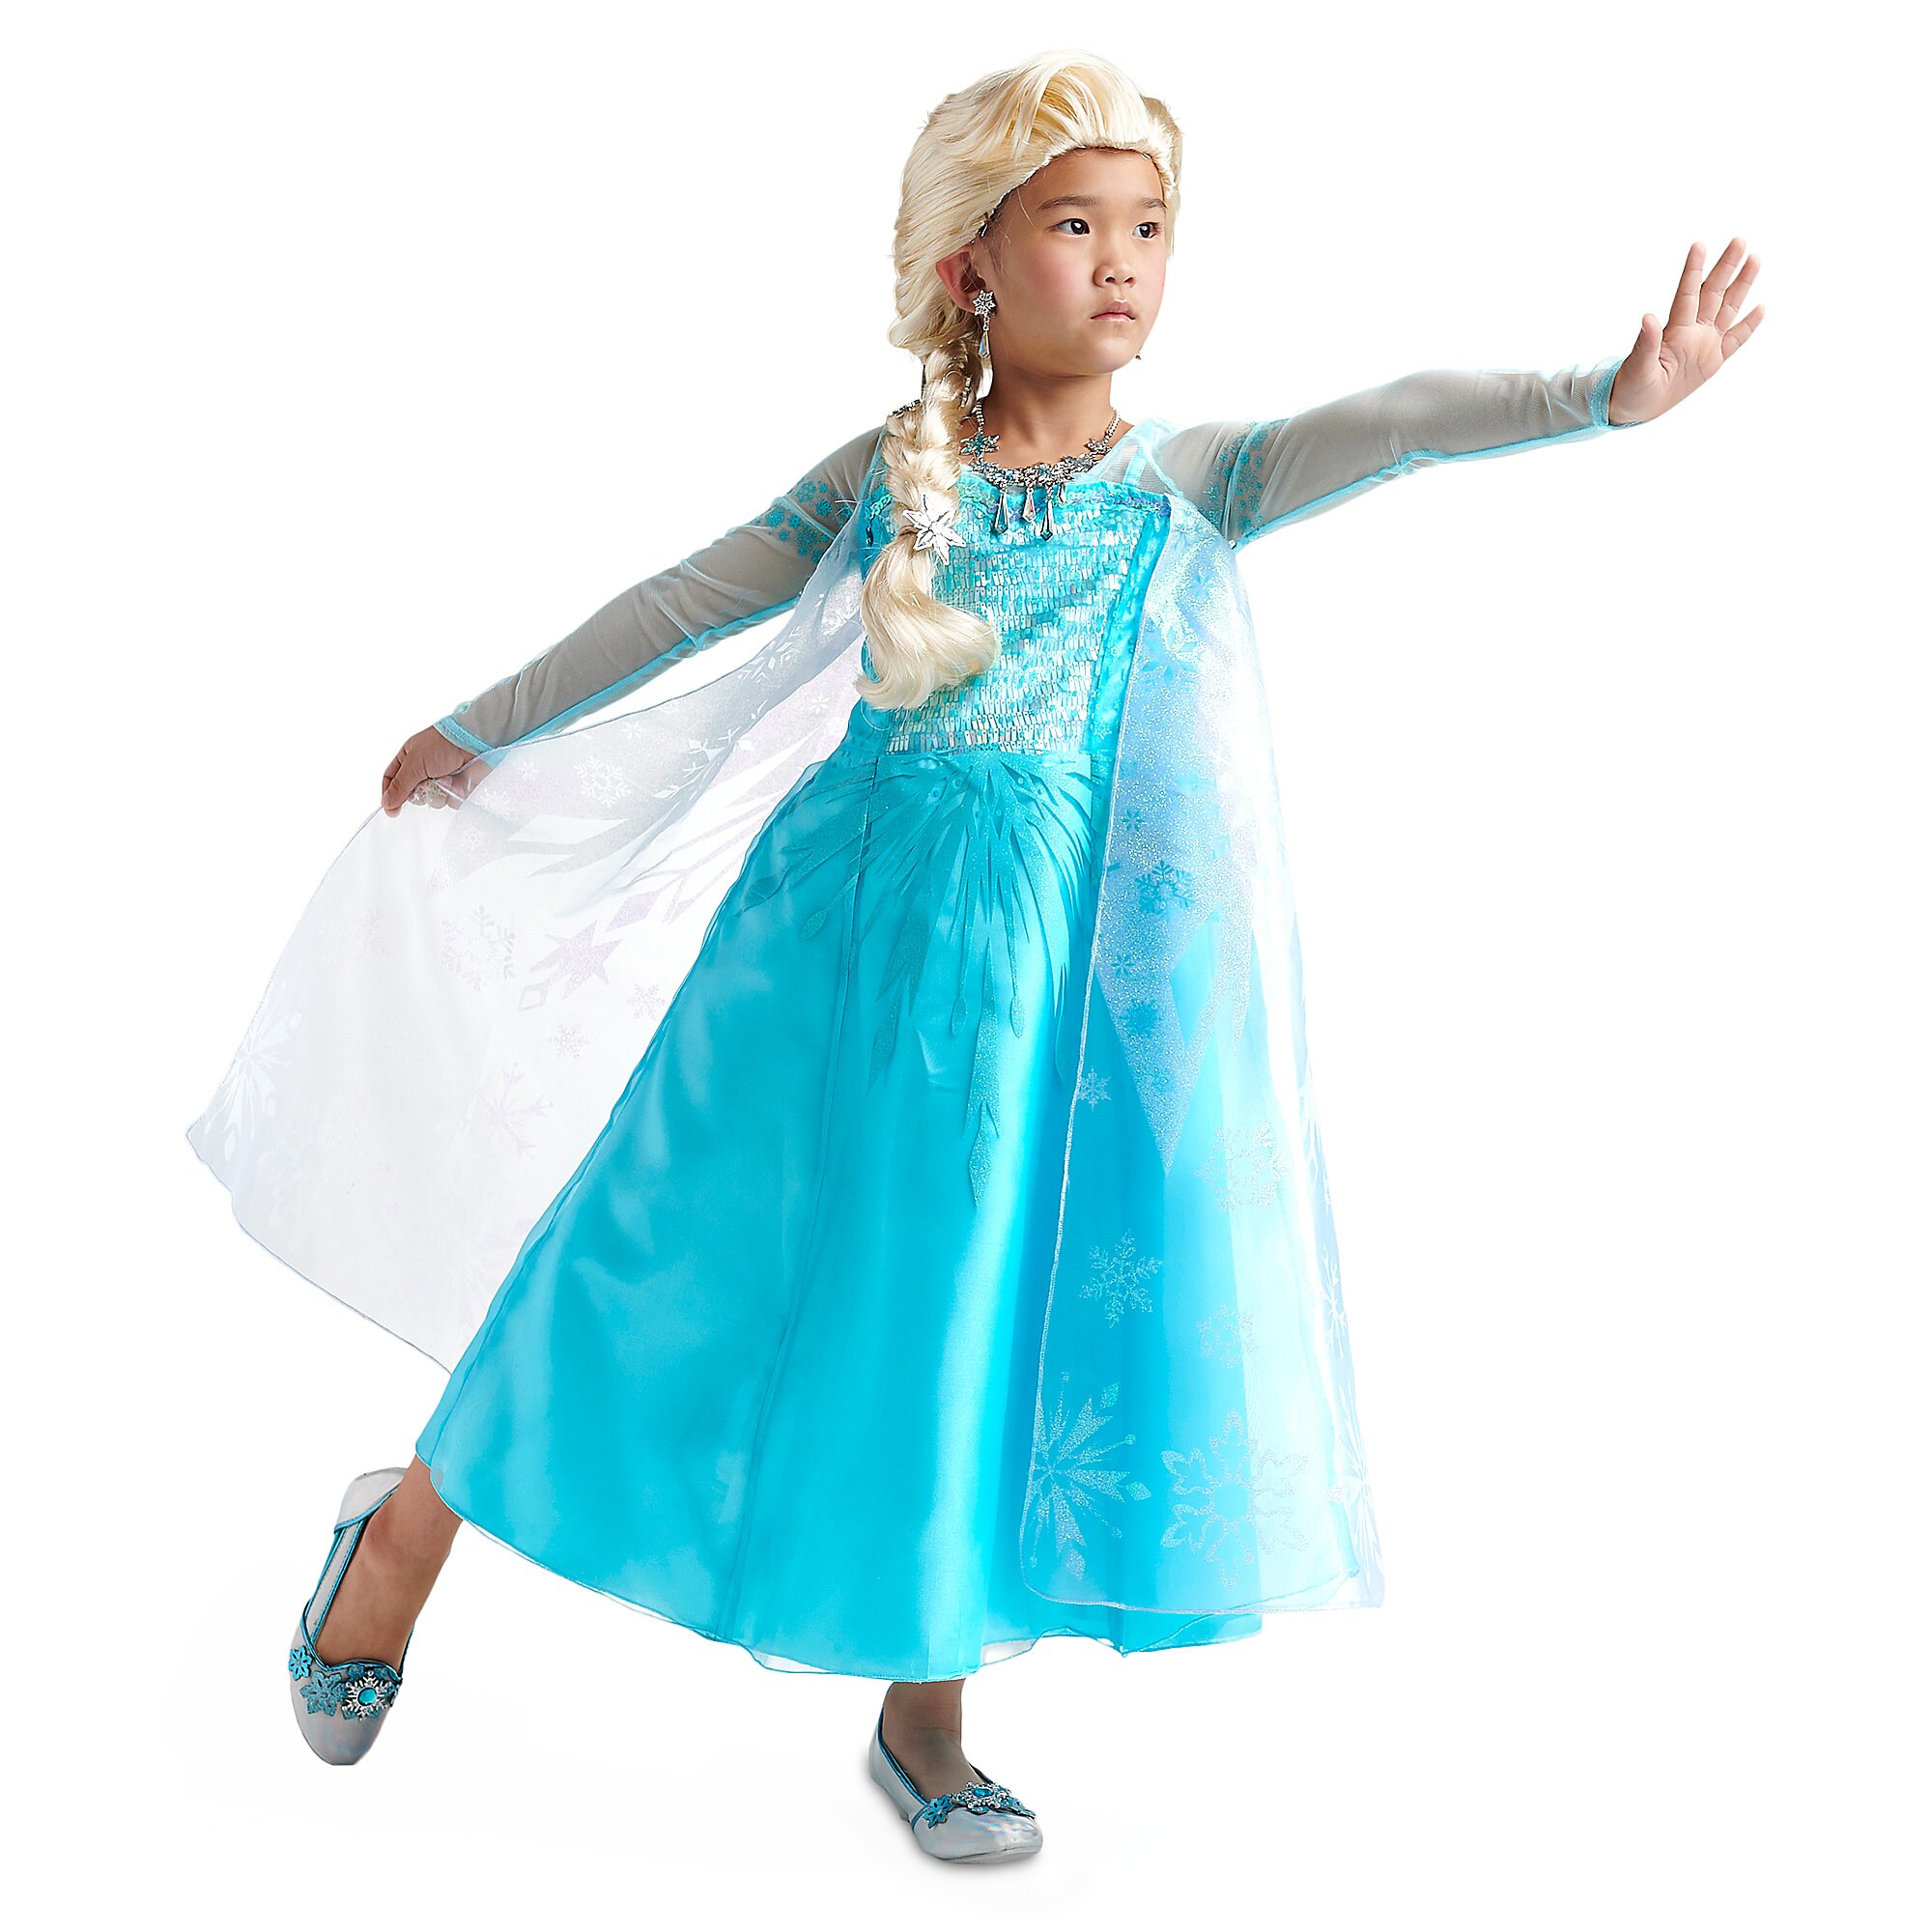 Elsa Costume for Kids - Frozen